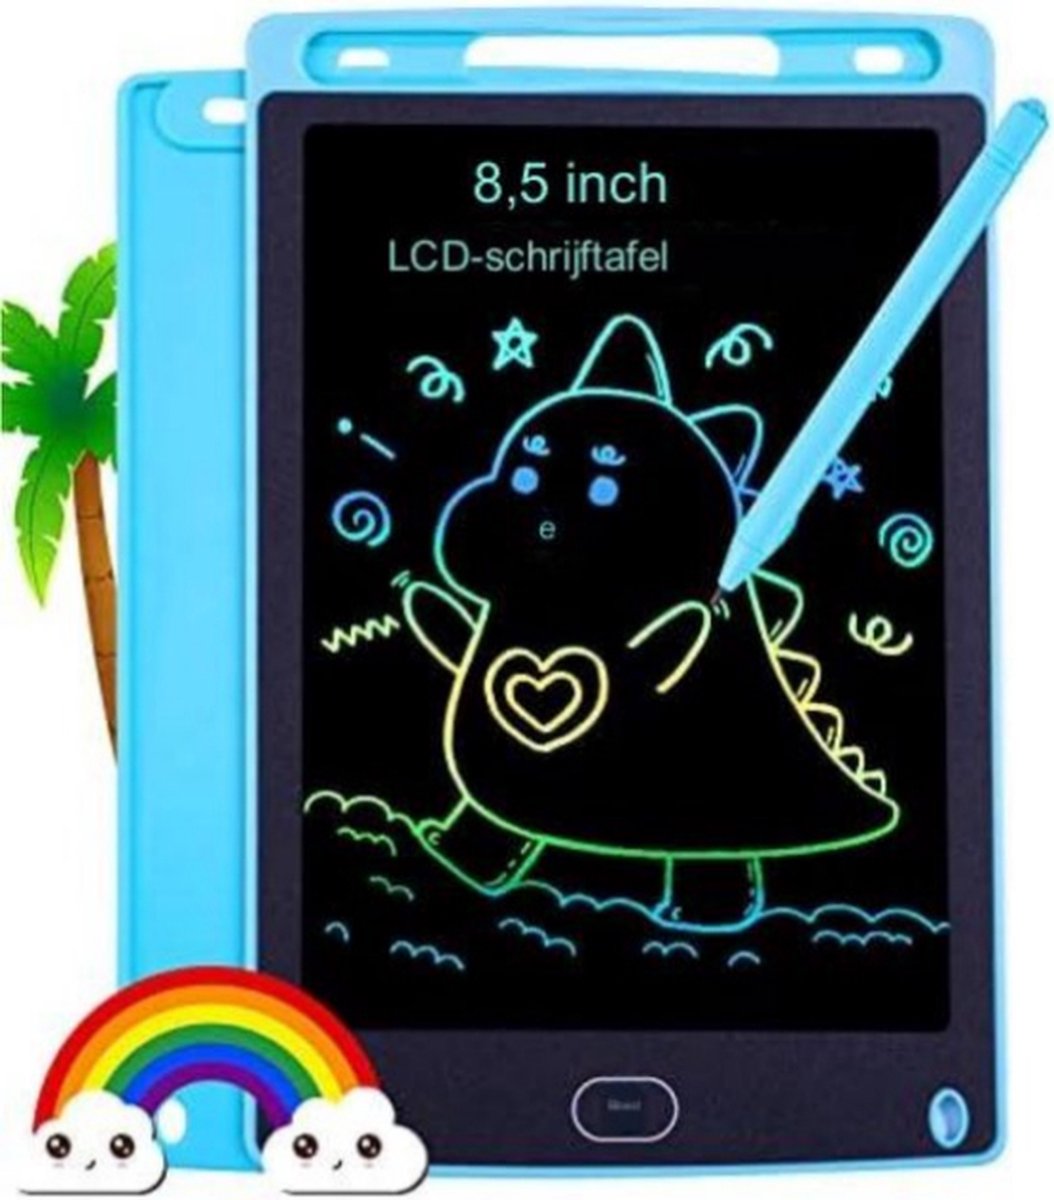 Tekentablet Kinderen - Tekentablet Met Scherm - Grafische Tablet - Blauw - 8,5inch